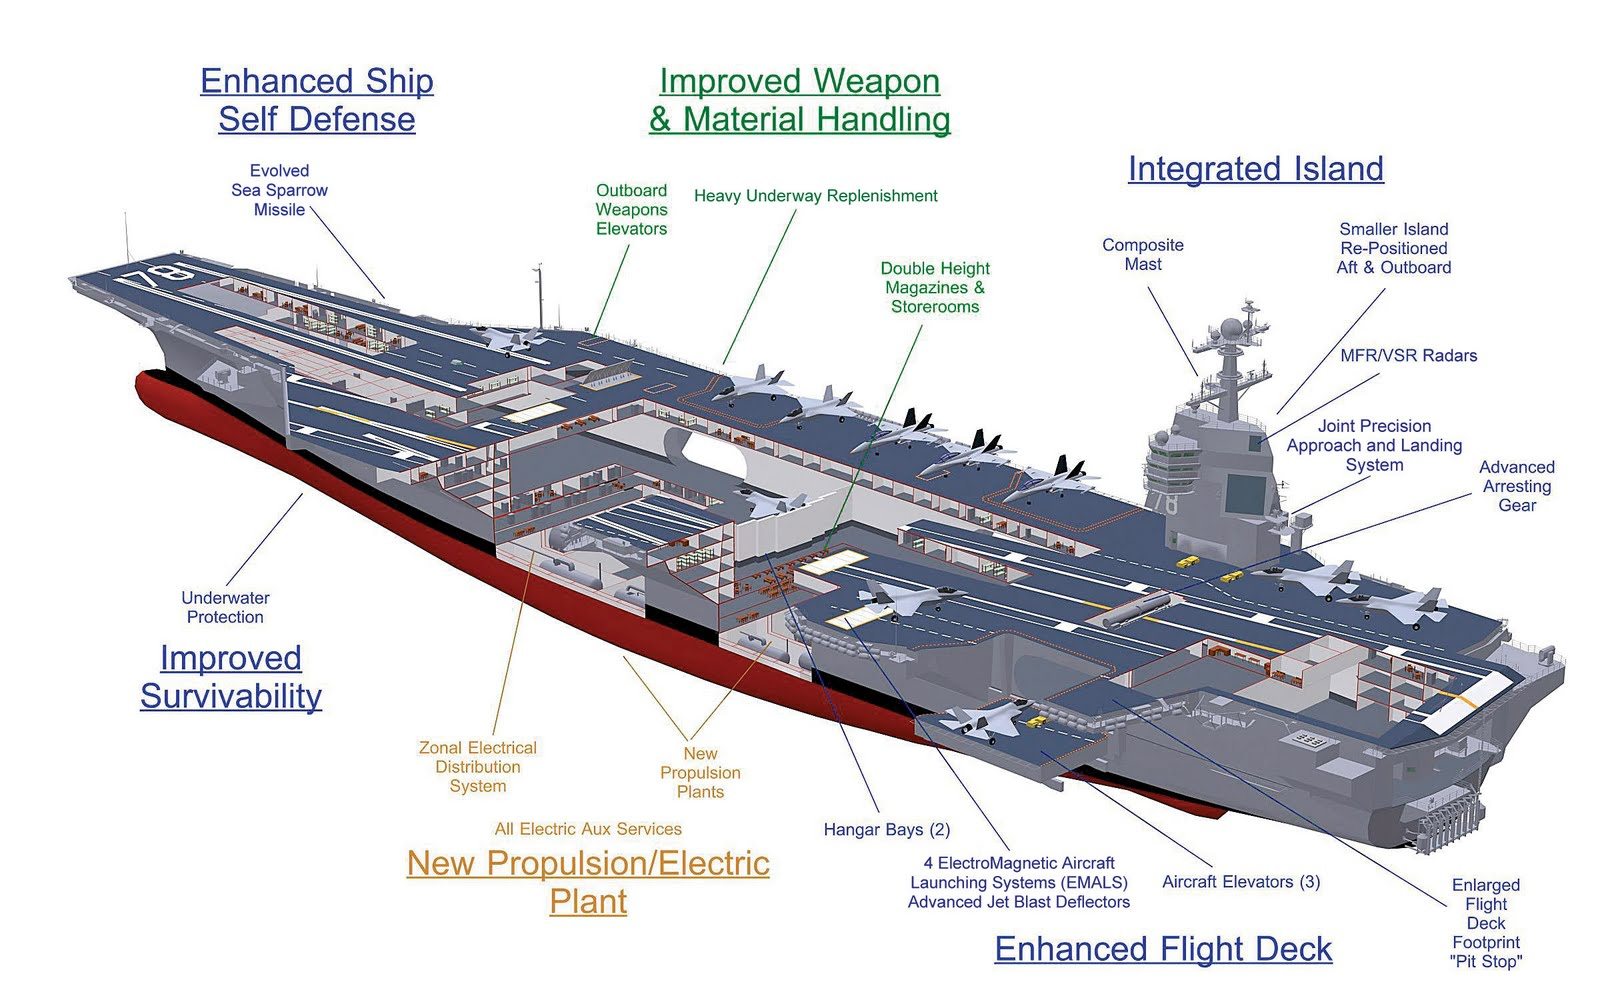 Uss gerald r ford class aircraft carrier #1